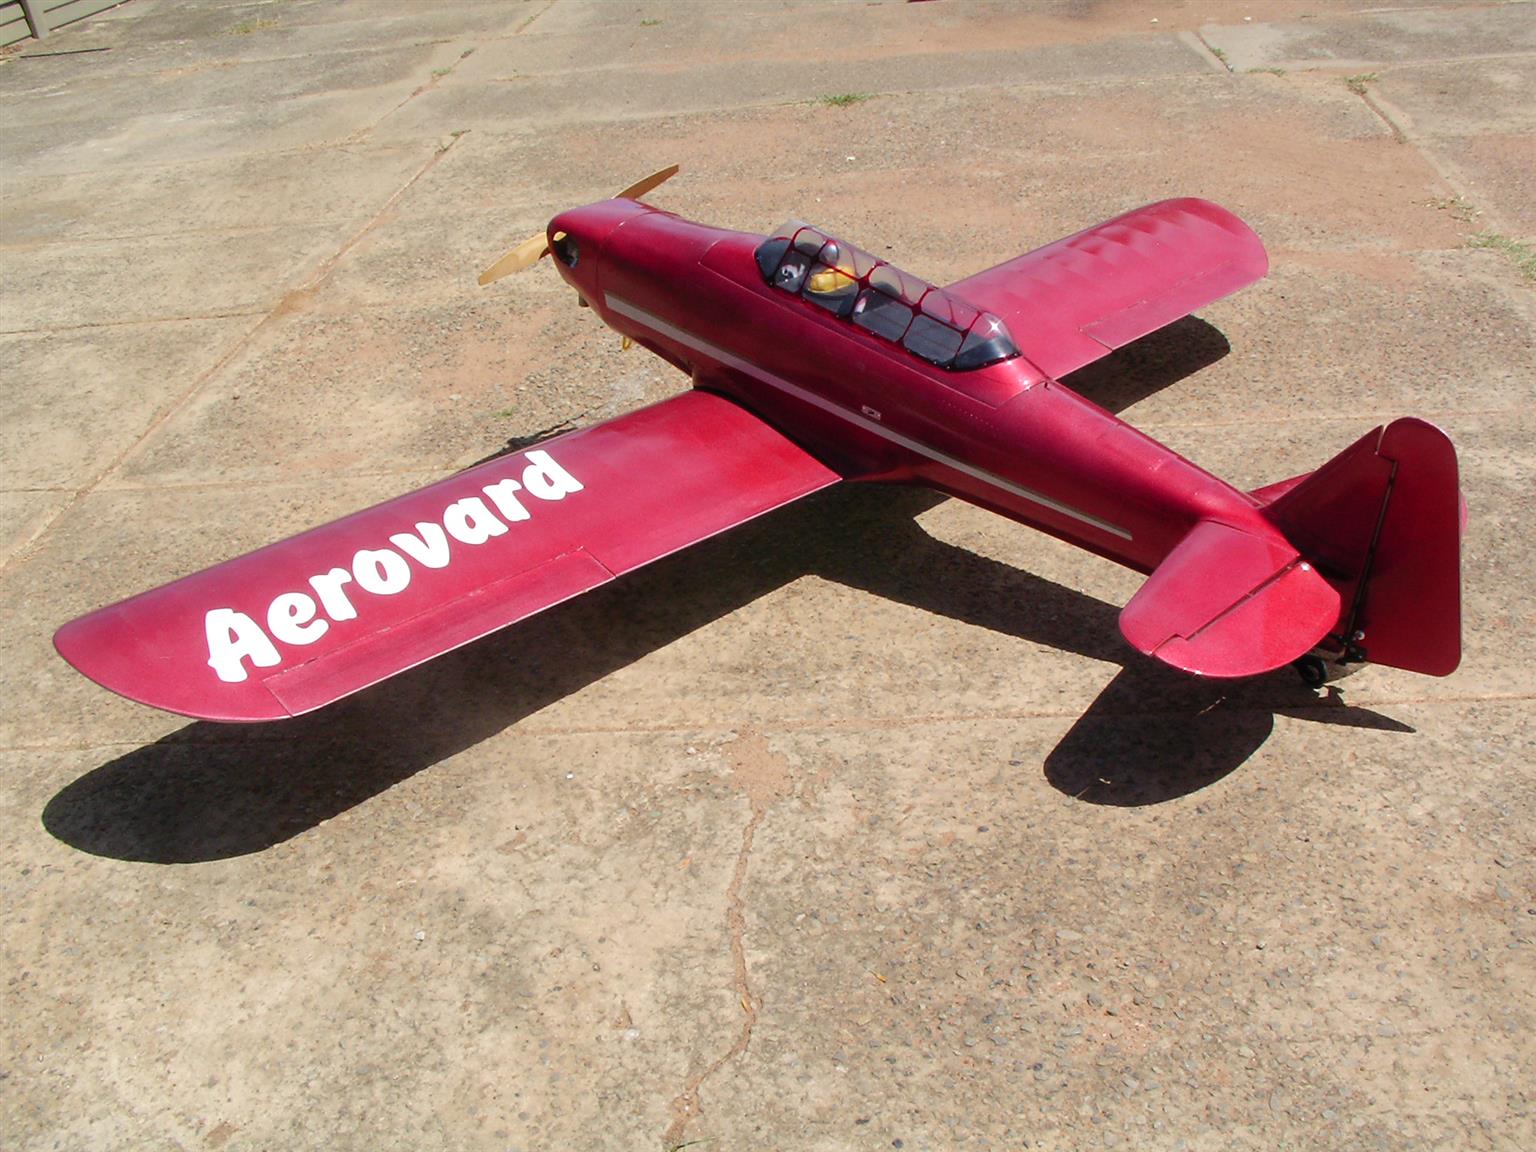 Aerovard RC plane